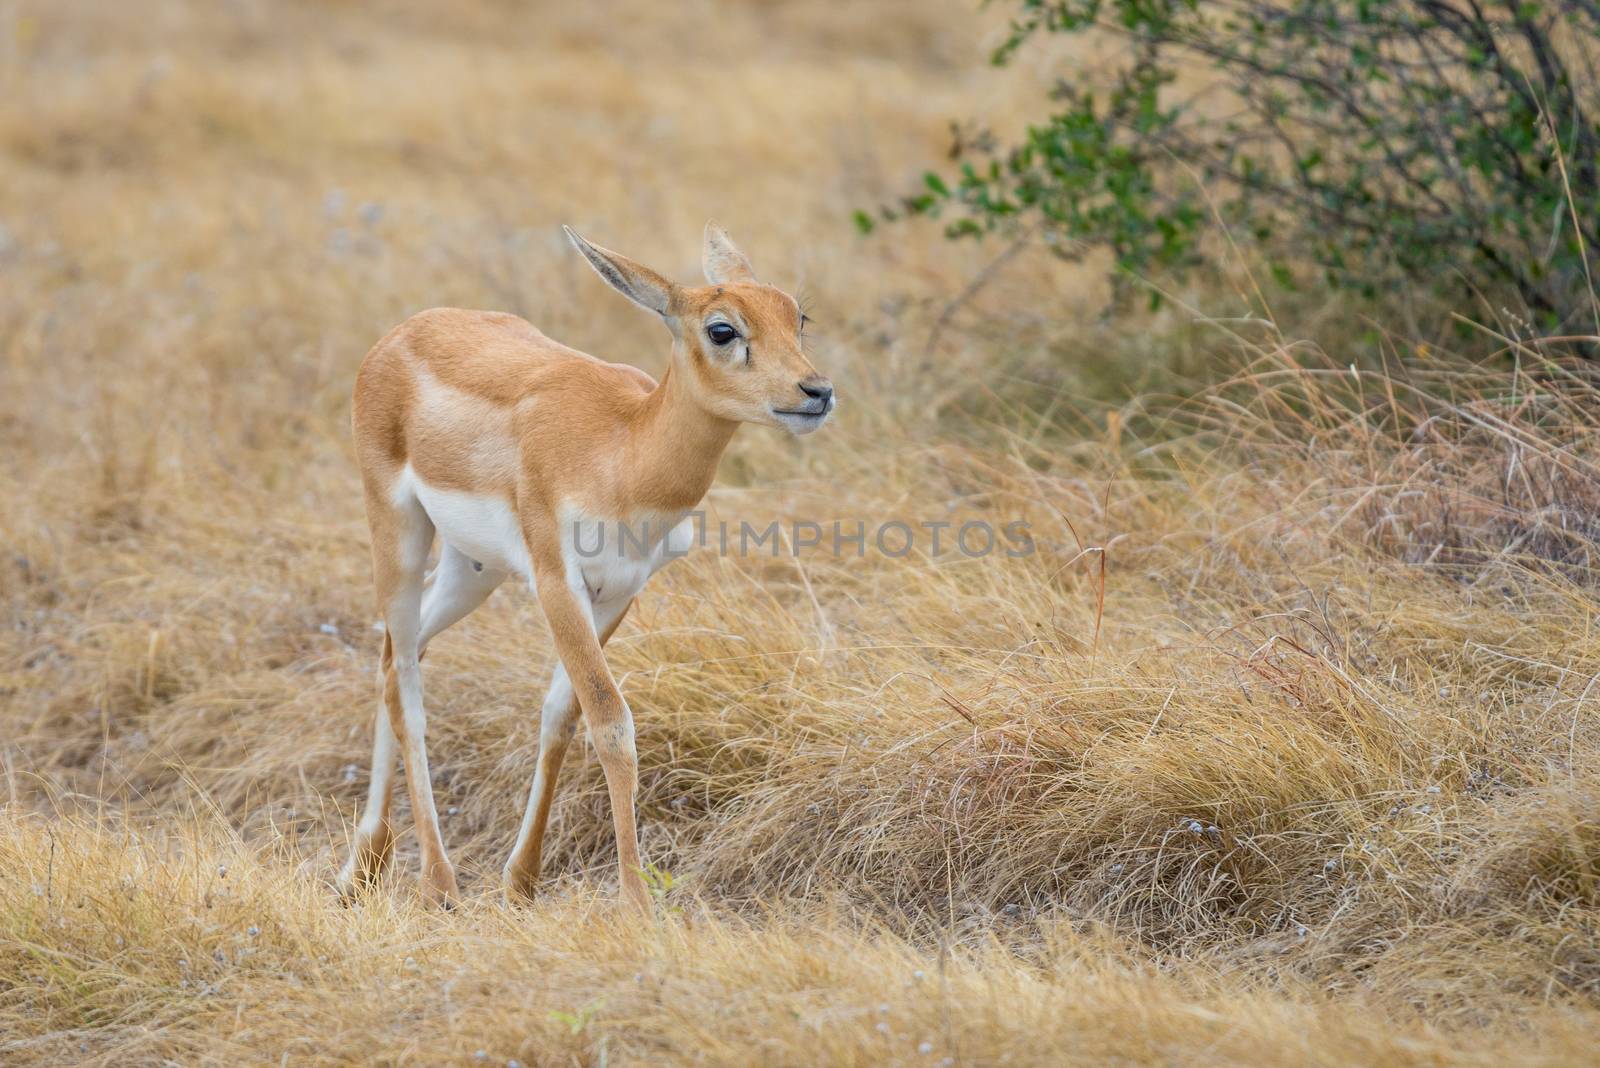 Young Wild South Texas blackbuck antelope calf